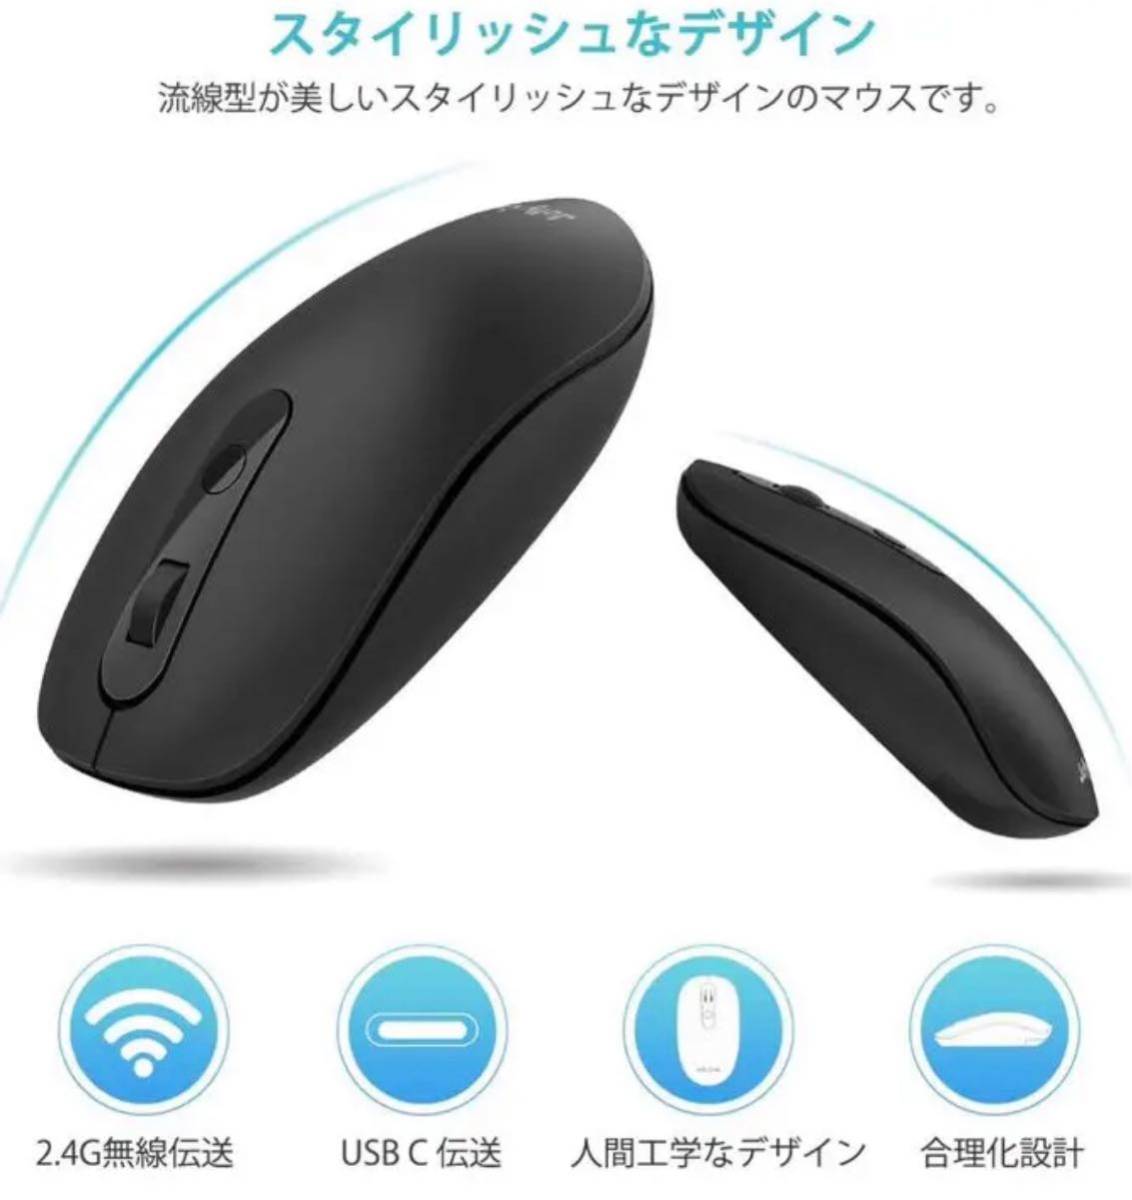 ワイヤレスマウス 新型 2.4G USB/type-C マウス 2台設備